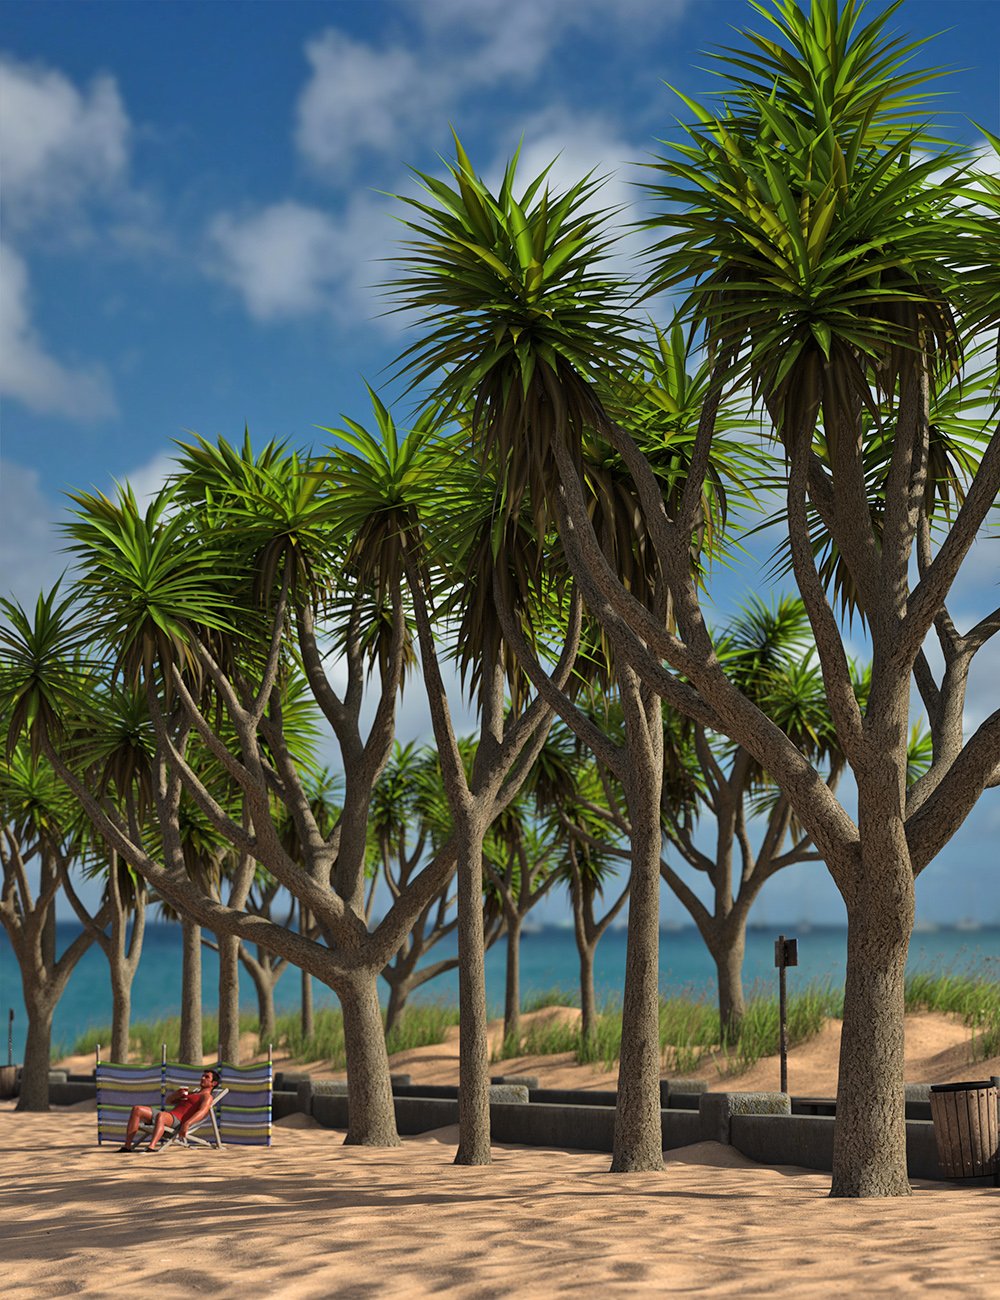 Predatron Cabbage Palm Trees by: Predatron, 3D Models by Daz 3D